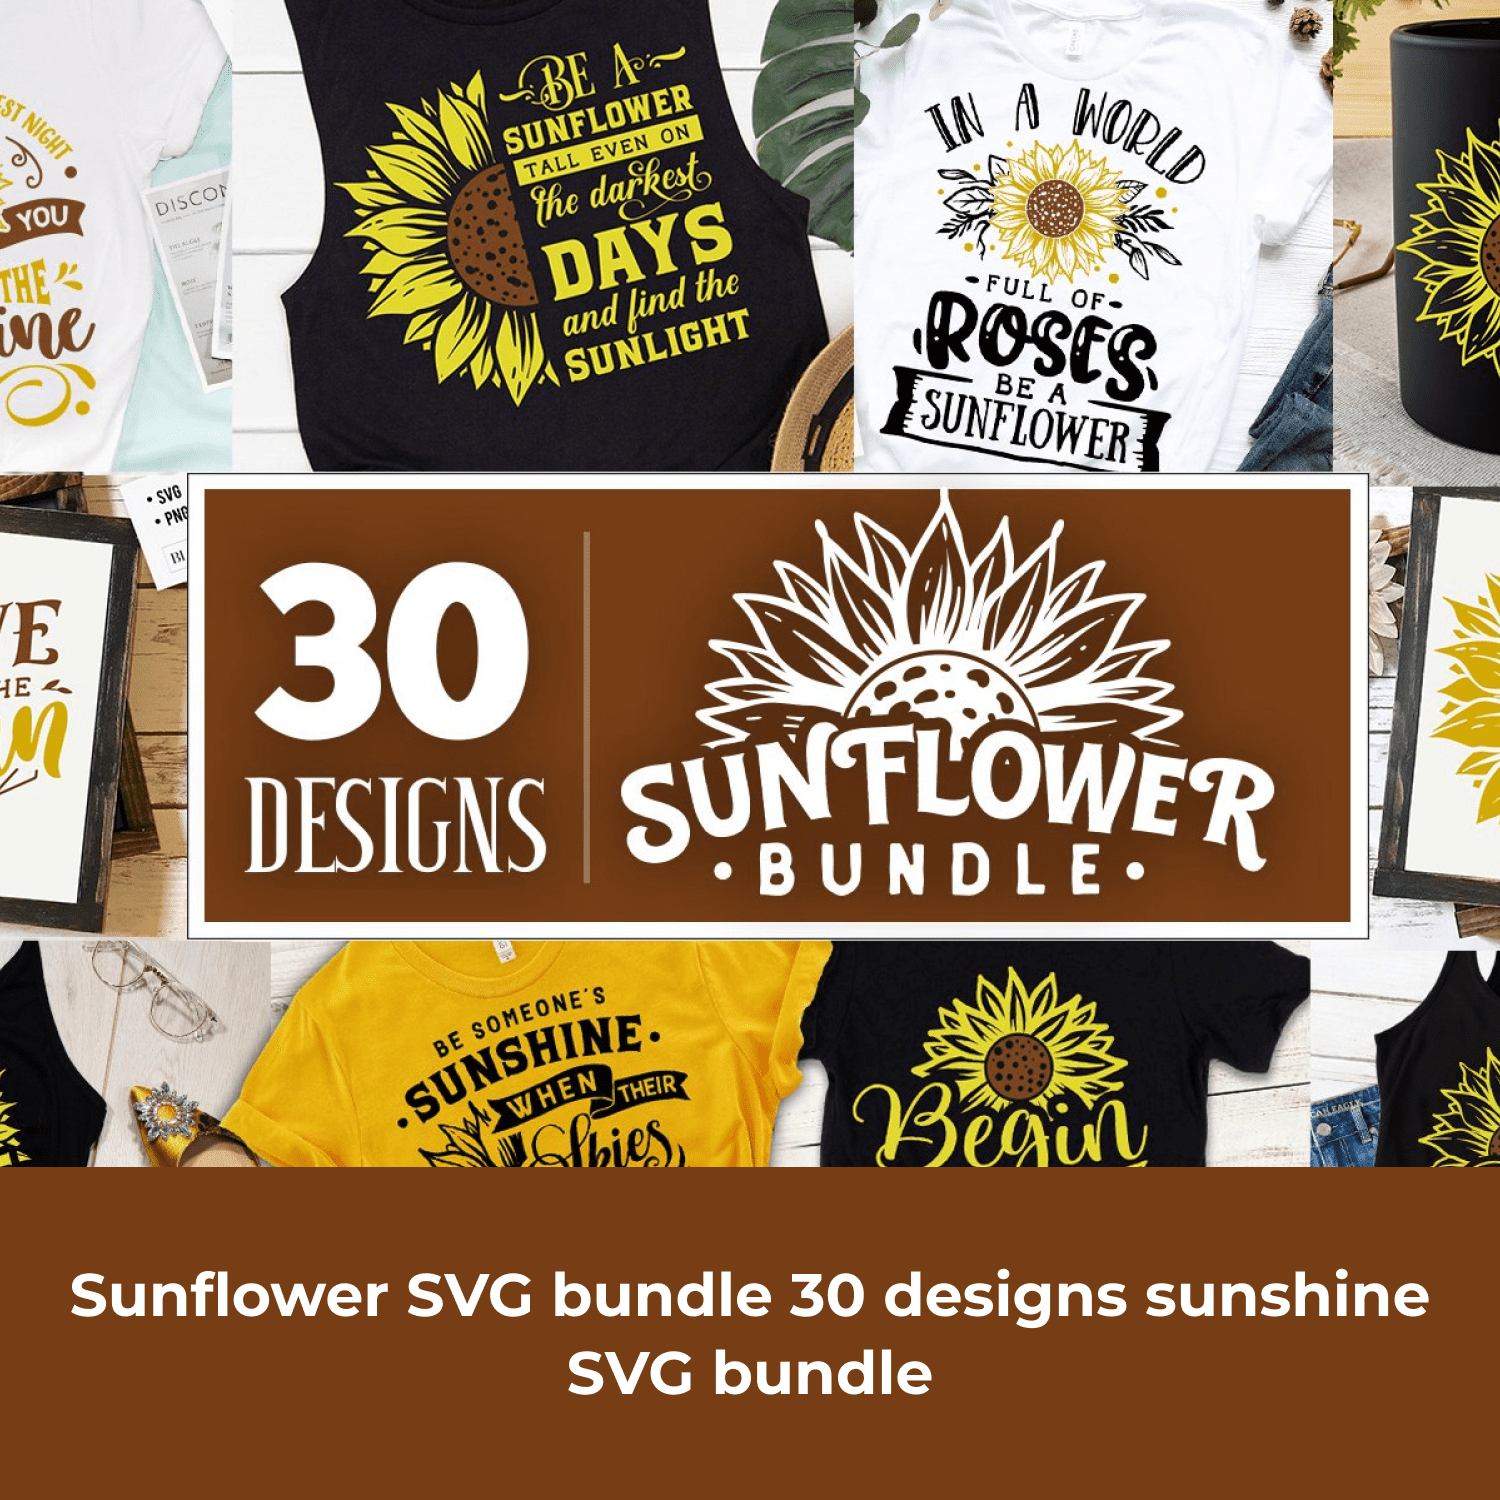 Sunflower SVG bundle 30 designs sunshine SVG bundle cover.